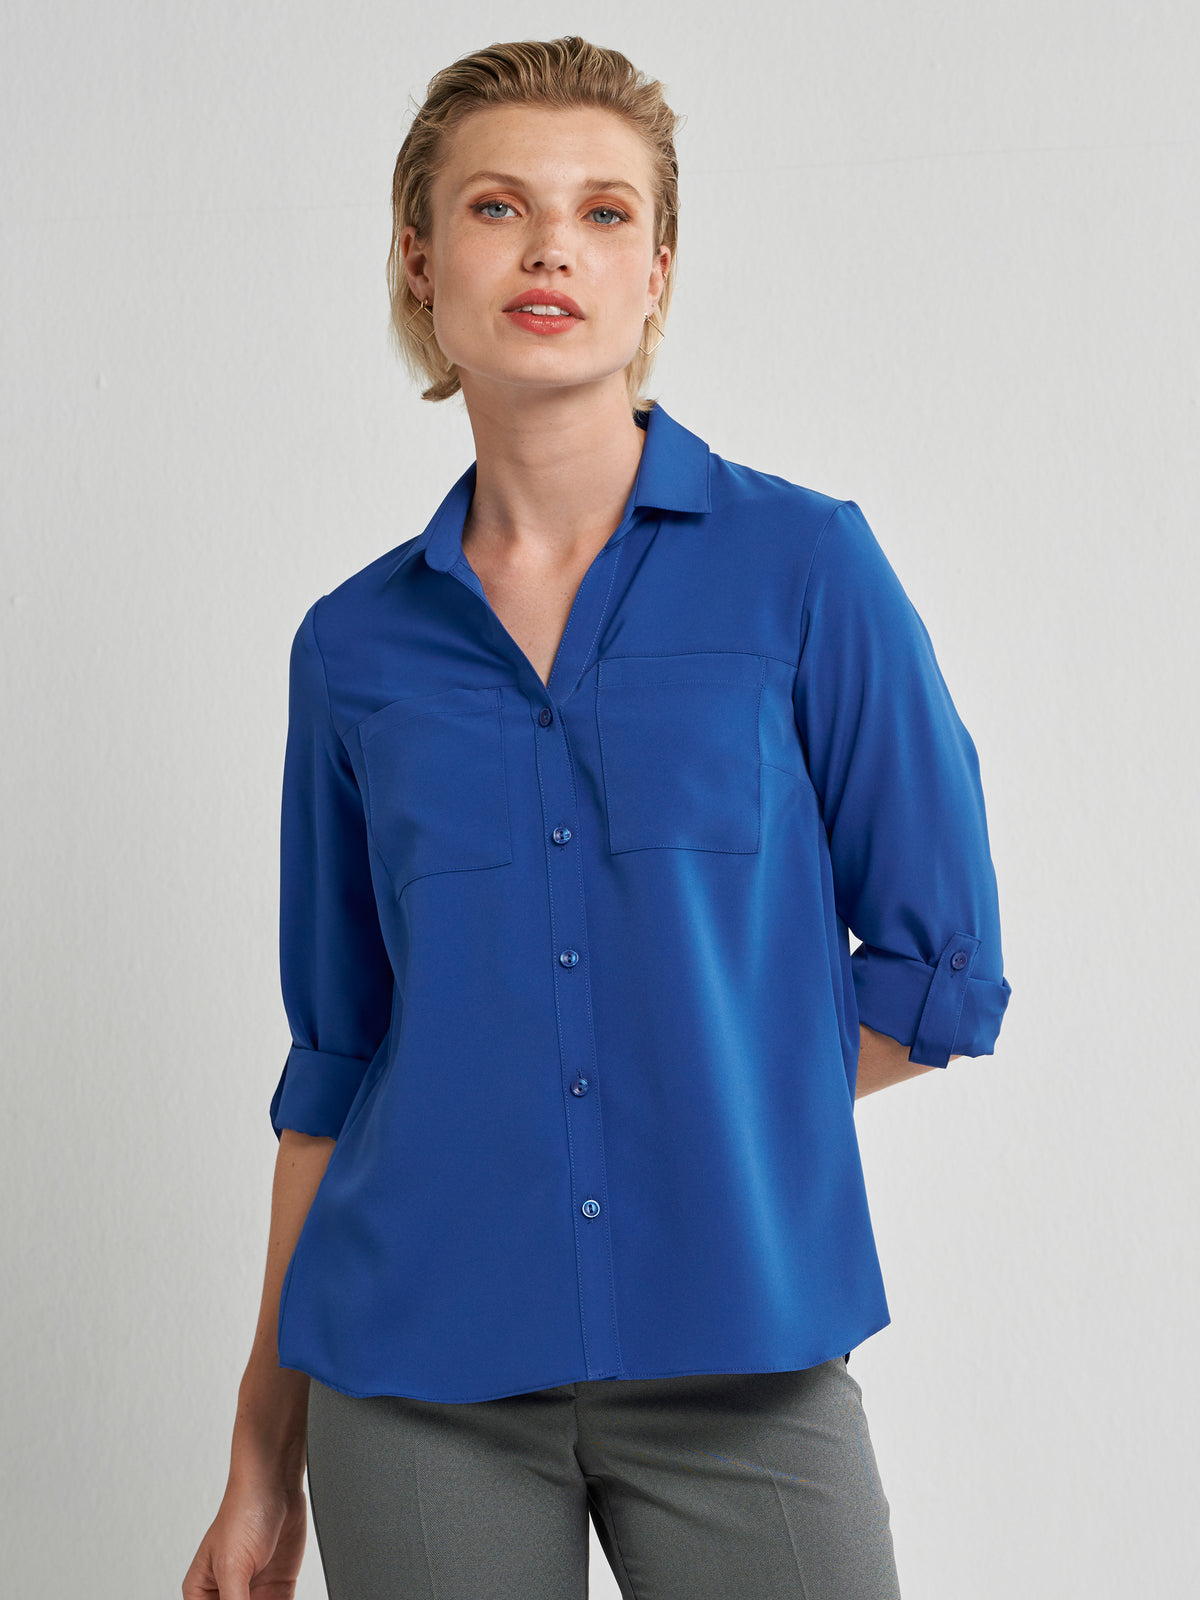 Evelyn pocket flowy shirt - bright blue